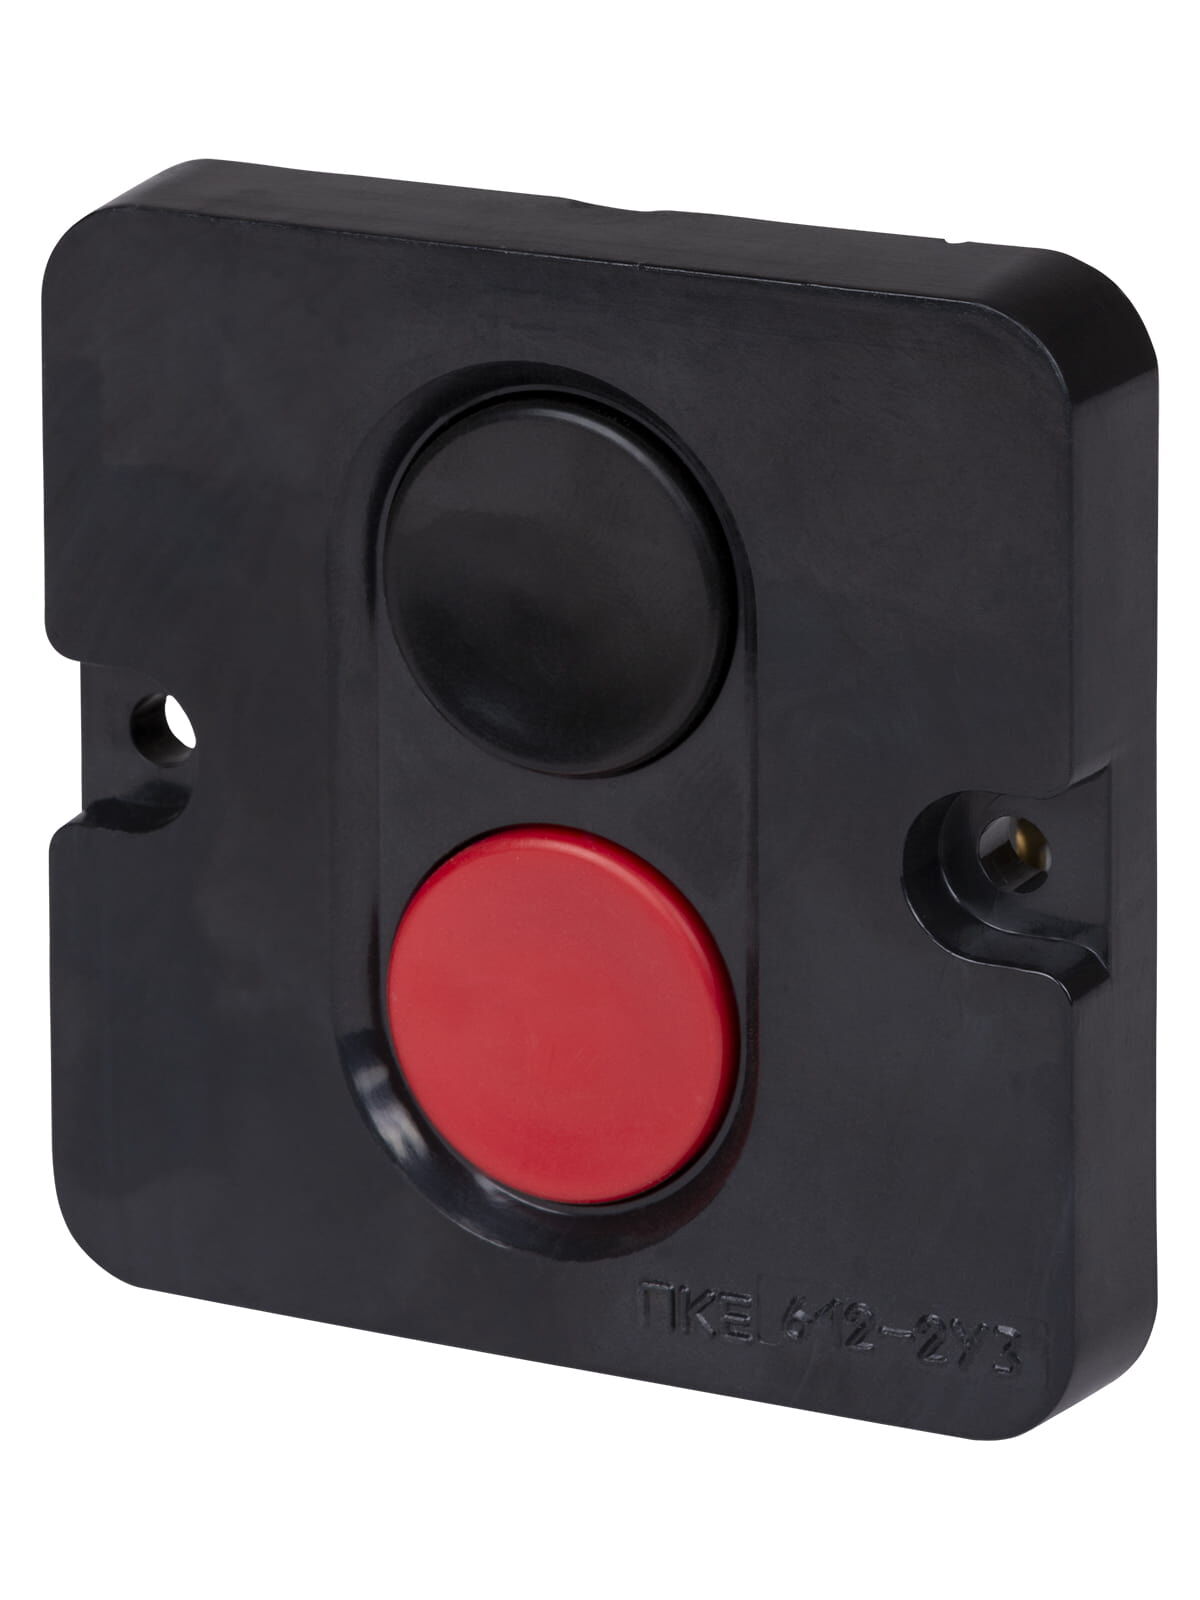 Пост кнопочный ПКЕ 612 У2 красная и черная кнопки, IP40 красная и черная кнопки, IP40